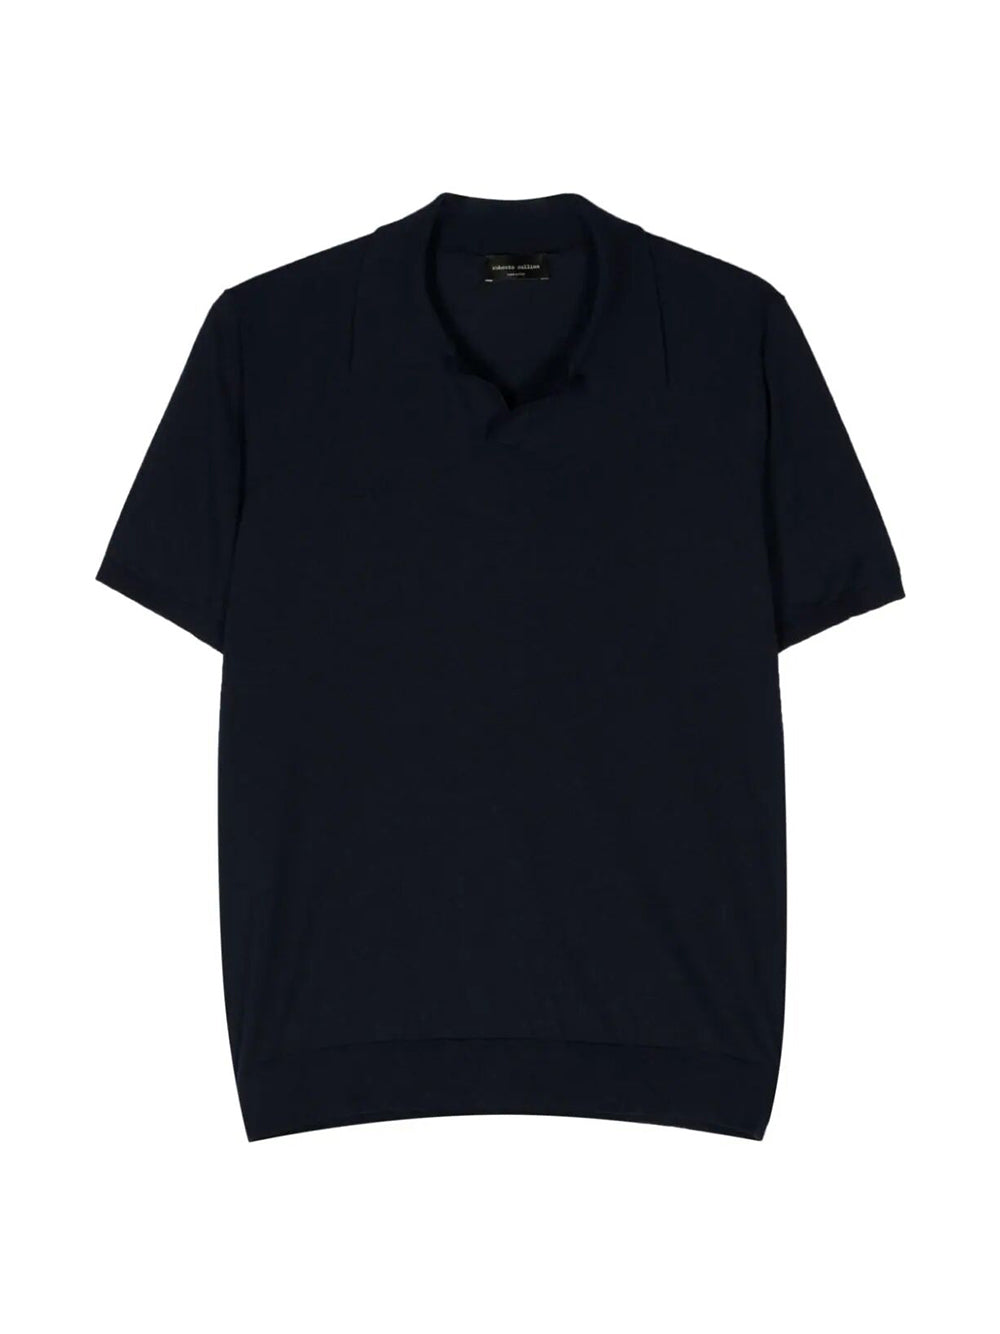 Navy cotton Polo MC shirt